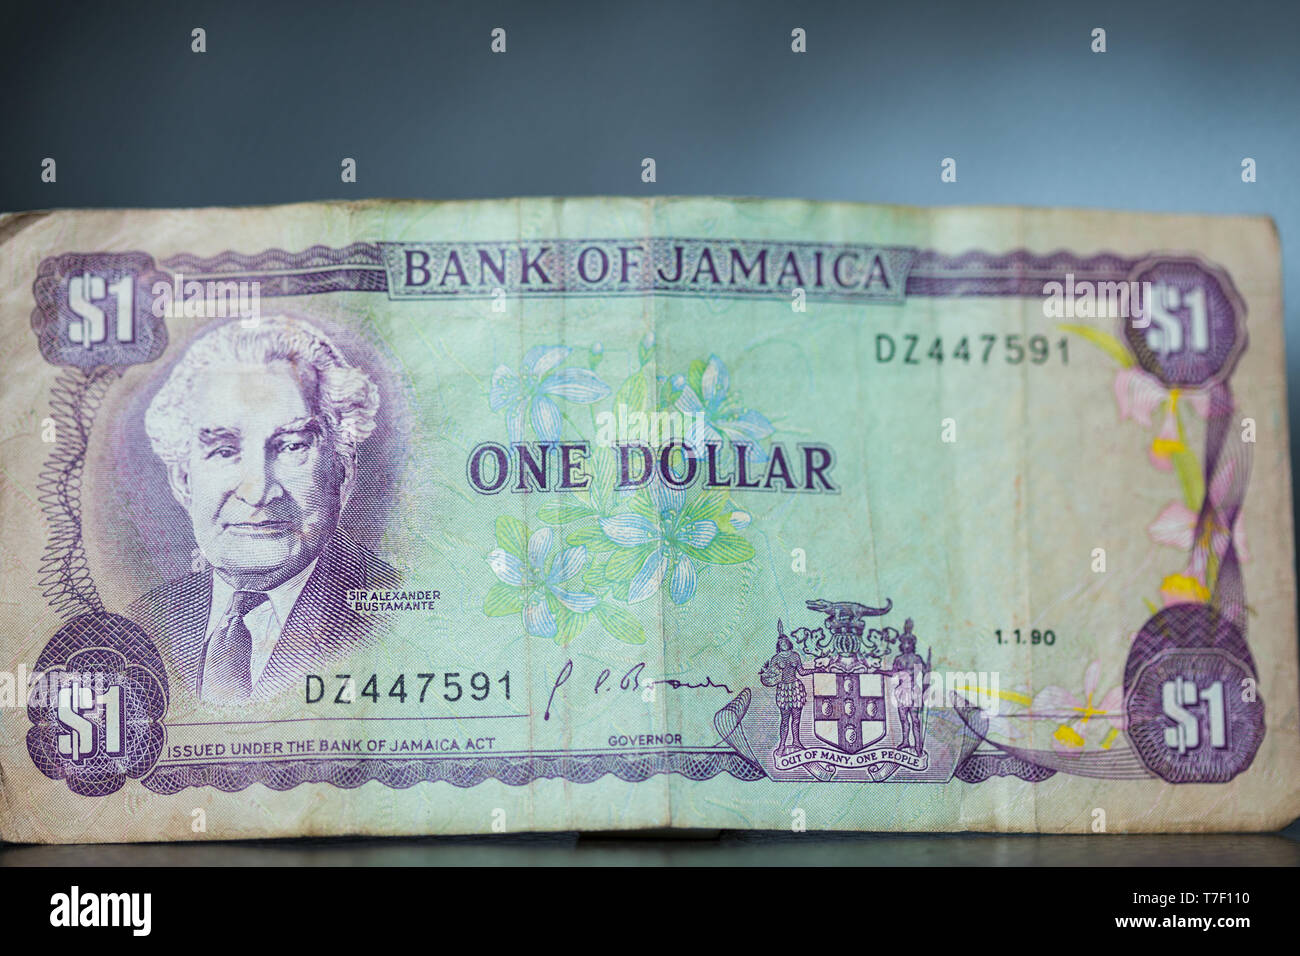 Toronto, Ontario / Canada - Aprile 2019: Un fuori circolazione giamaicano un dollaro visualizzando il diritto eccellente Sir Alexander Bustamante Foto Stock